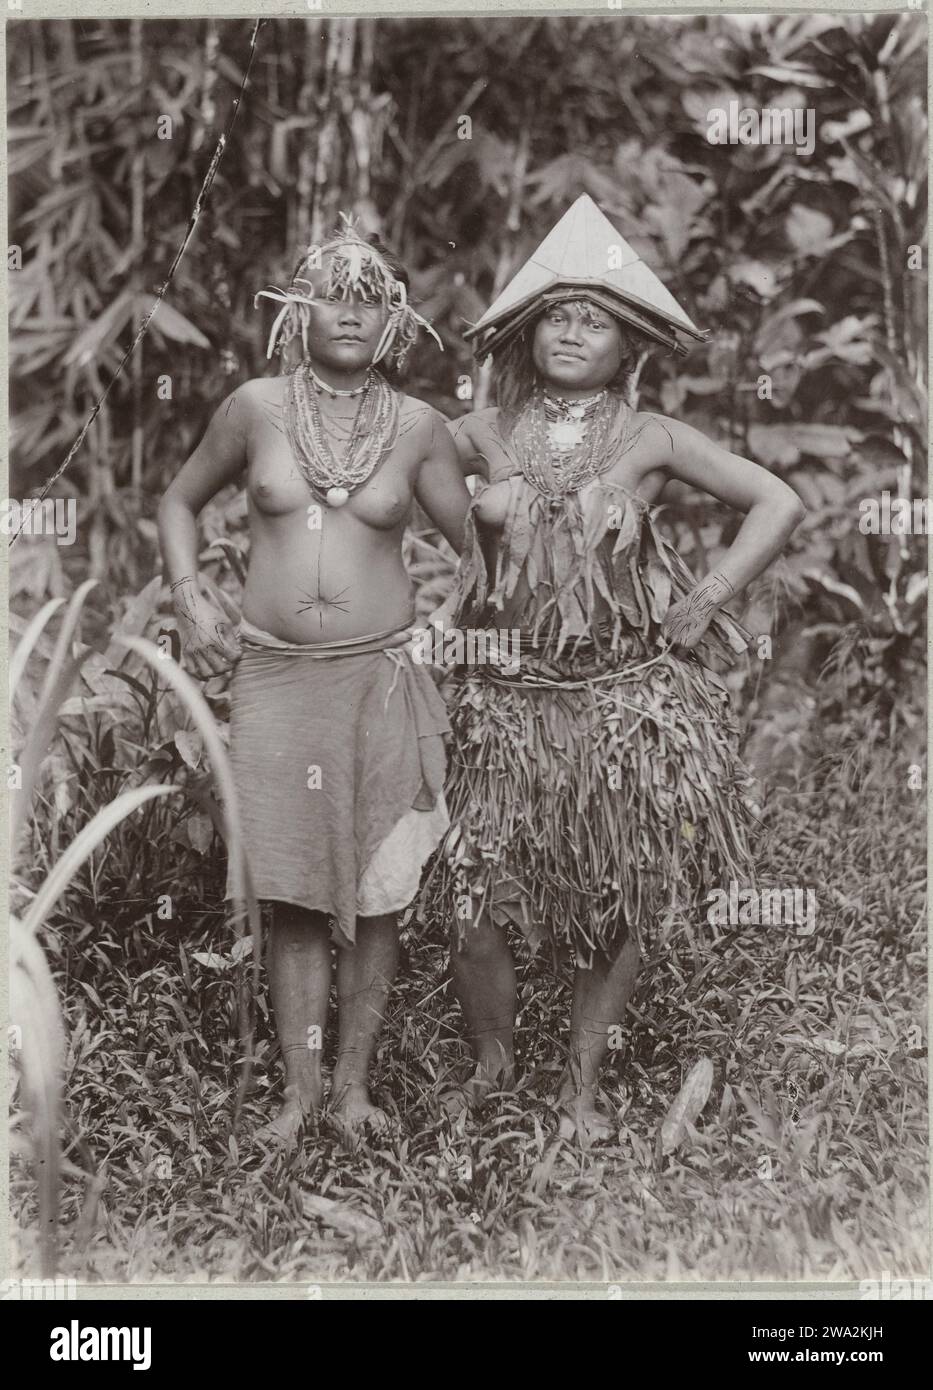 Porträt von zwei unbekannten jungen Frauen auf Pagai in der Gestation der Insel, 1891 - 1912 Fotografieren zwei junge Frauen auf Pagei in der Gestation der Insel. Das rechte Mädchen trägt einen Korbrock und das linke trägt ein Tuch um die Taille. Auf dem Kopf tragen sie Verzierungen mit einem dreieckigen Hut und einem Stirnband mit einem Schilf darunter. Beide Frauen tragen Halsketten. Mentawai-Eilanden Papieralbumendruck anonyme historische Personen, dargestellt in einem Doppelporträt - BB - Frau. Volkstracht, regionale Tracht Mentawai-Eilanden Stockfoto